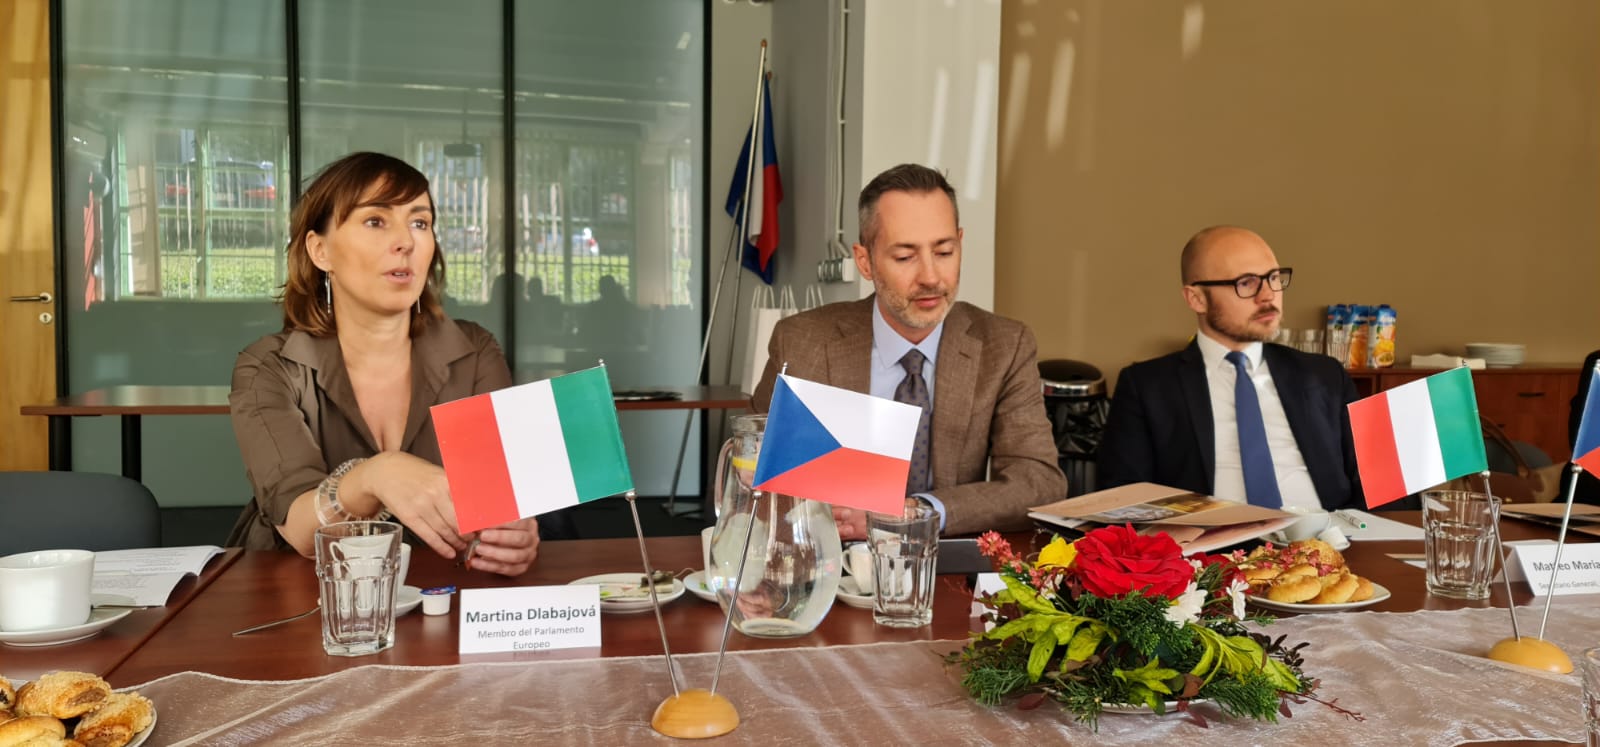 Incontro con i rappresentanti della Camera di Commercio Italo-Ceca